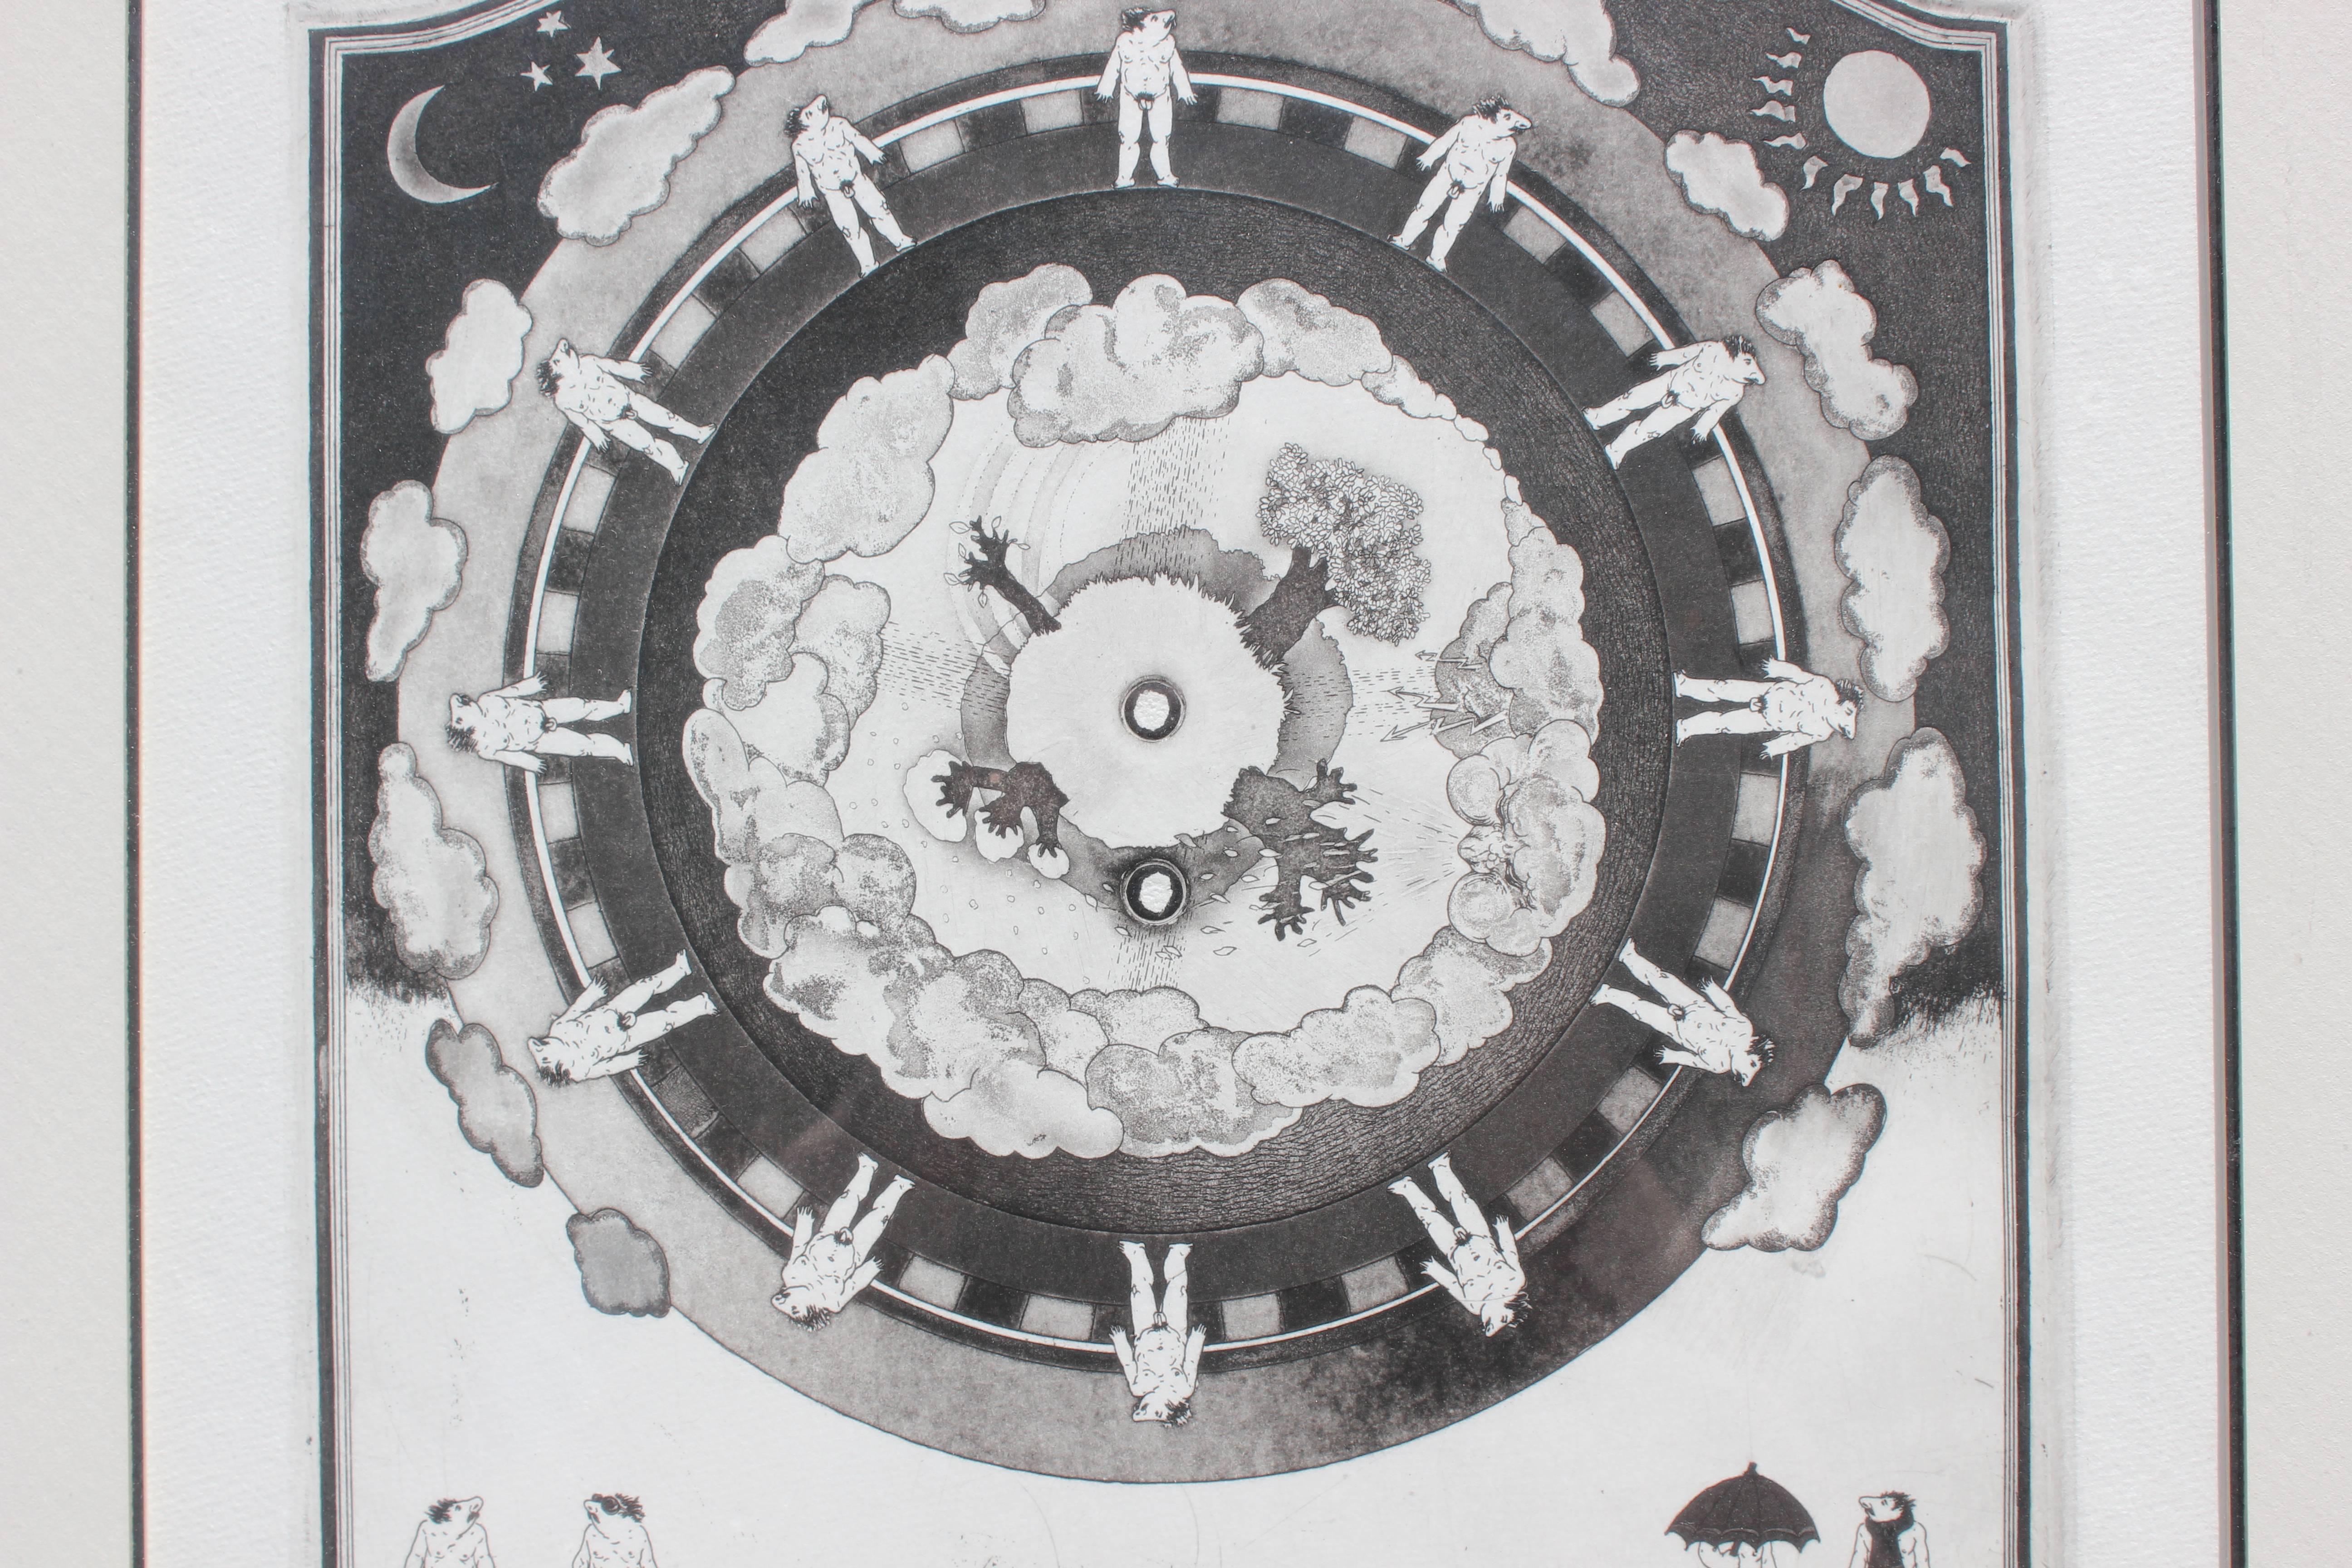 Lithographie en noir et blanc avec des hommes surréalistes positionnés dans une formation de roue qui représentent les différentes saisons d'une année. L'hiver est représenté par des arbres dénudés et des écharpes. L'automne est représenté par la